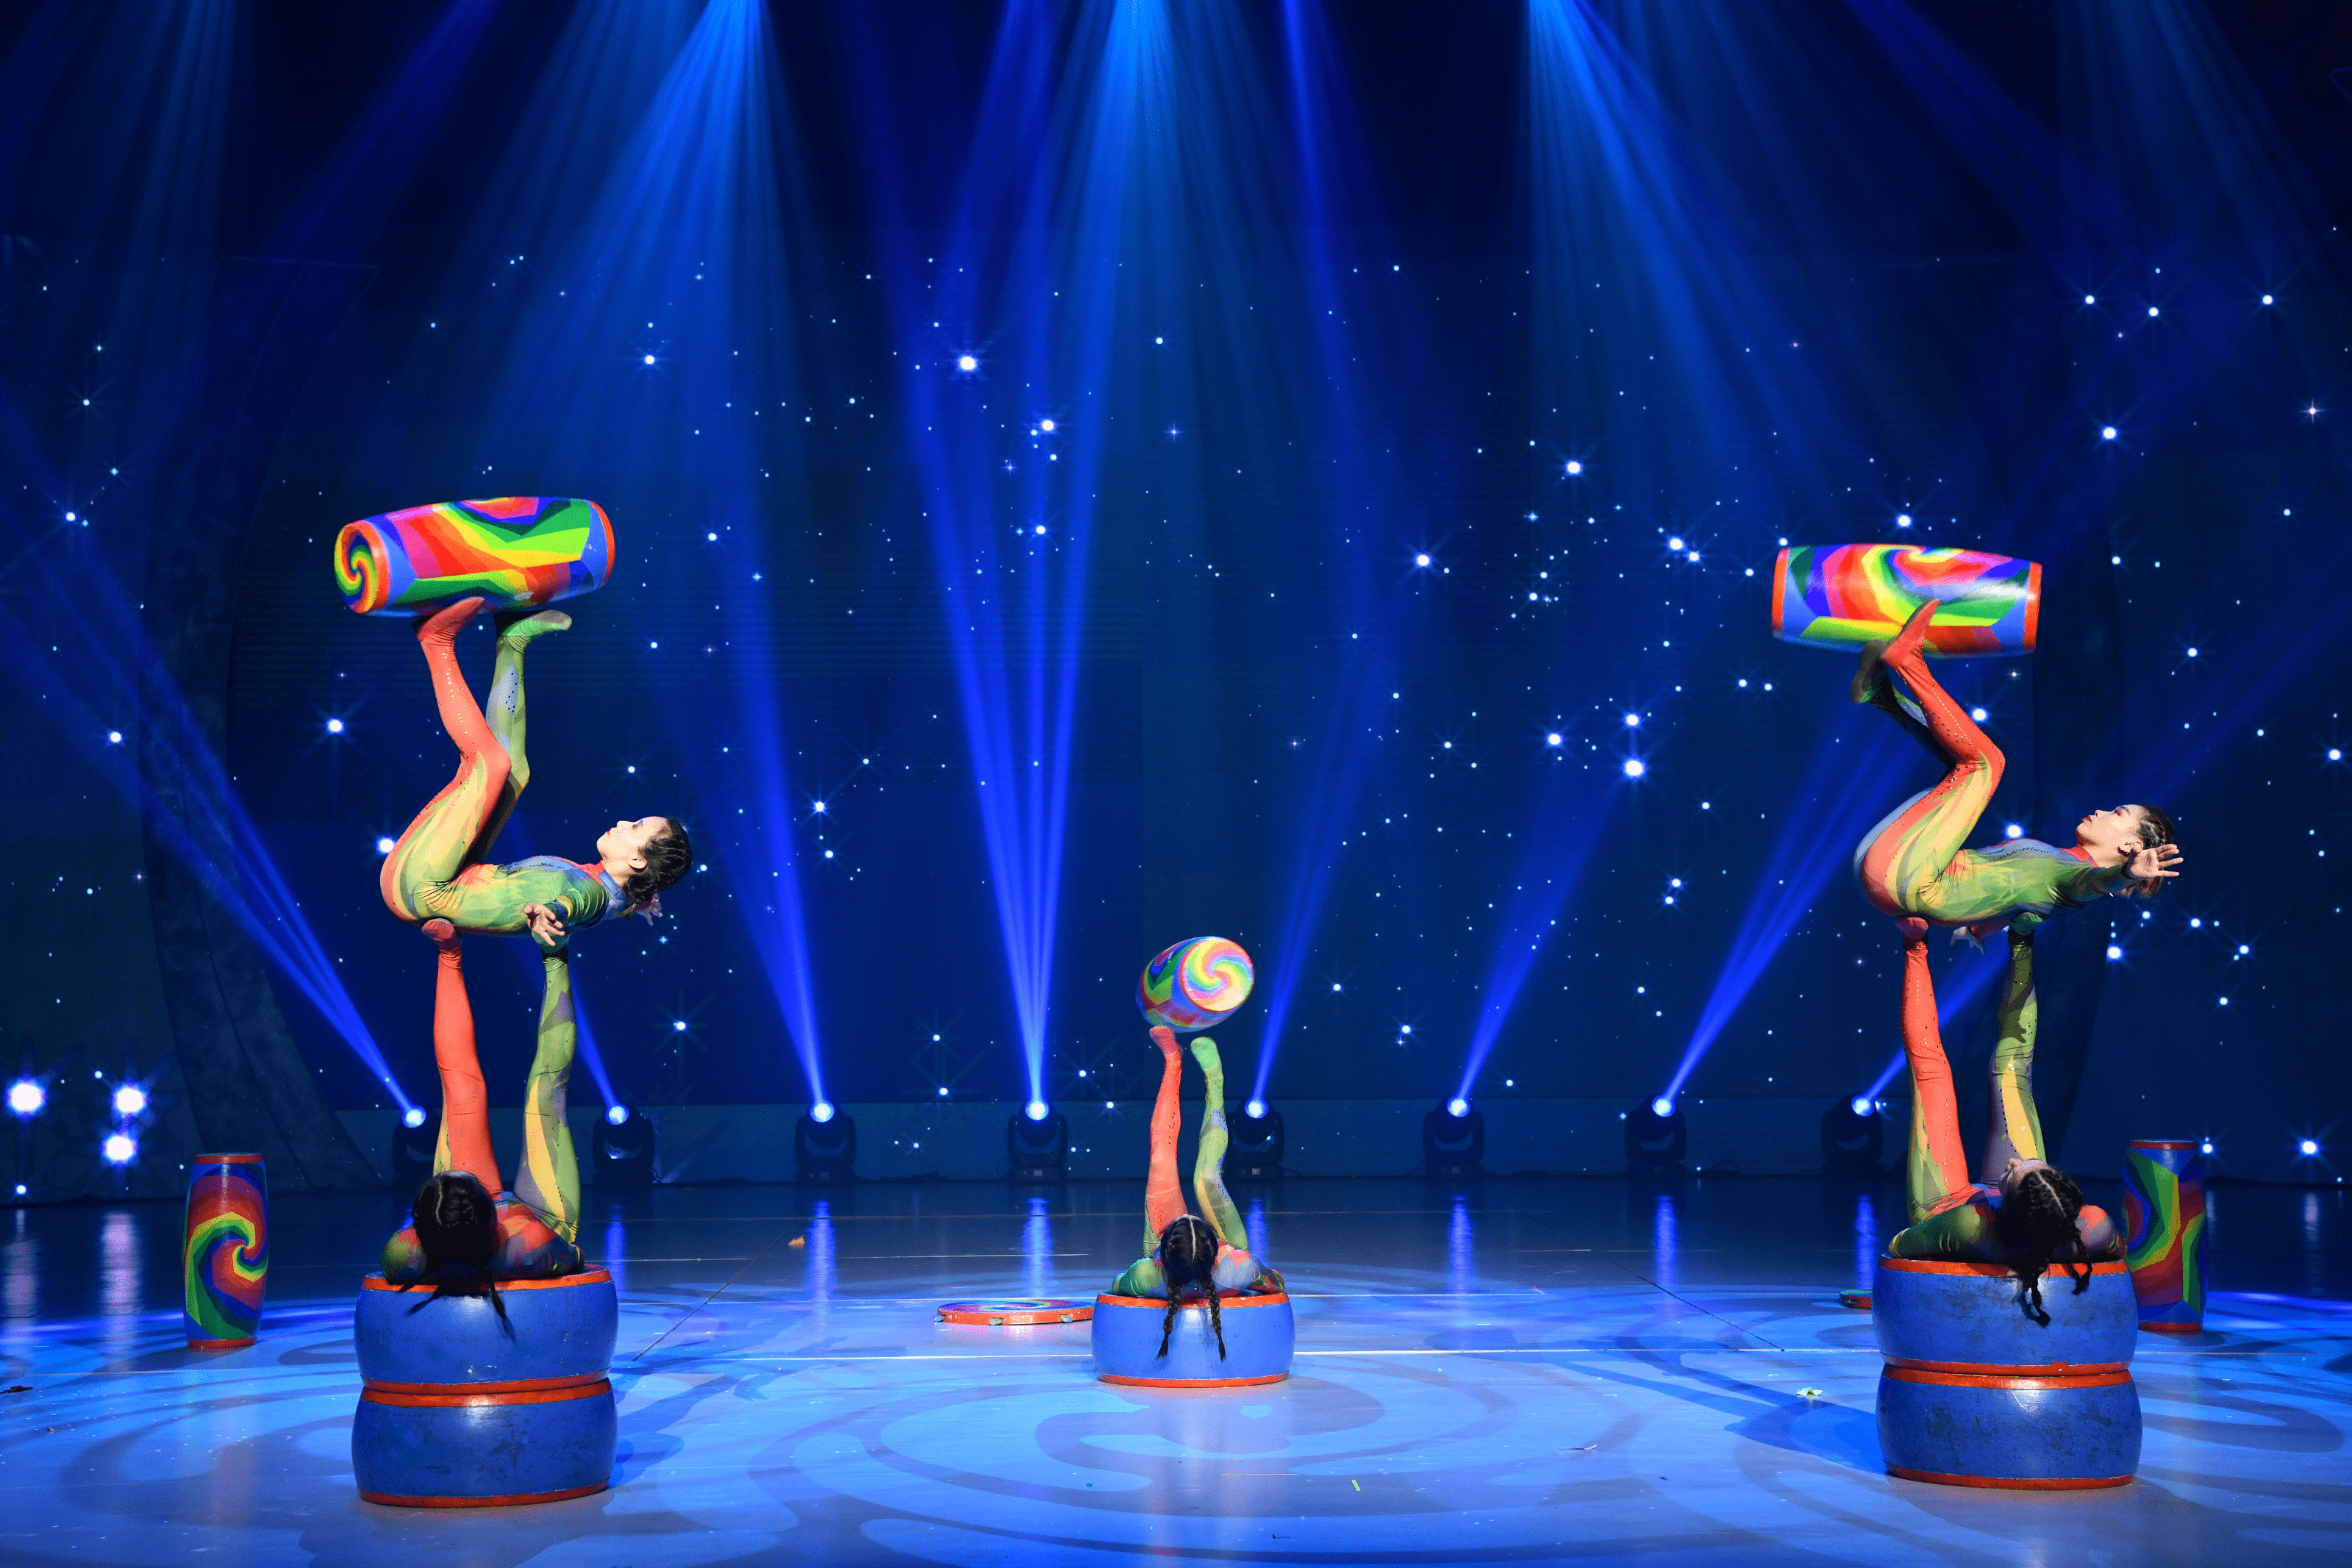 天津杂技团《三个和尚》中国杂技团曹凯《雨中狂想》开幕晚会上,著名